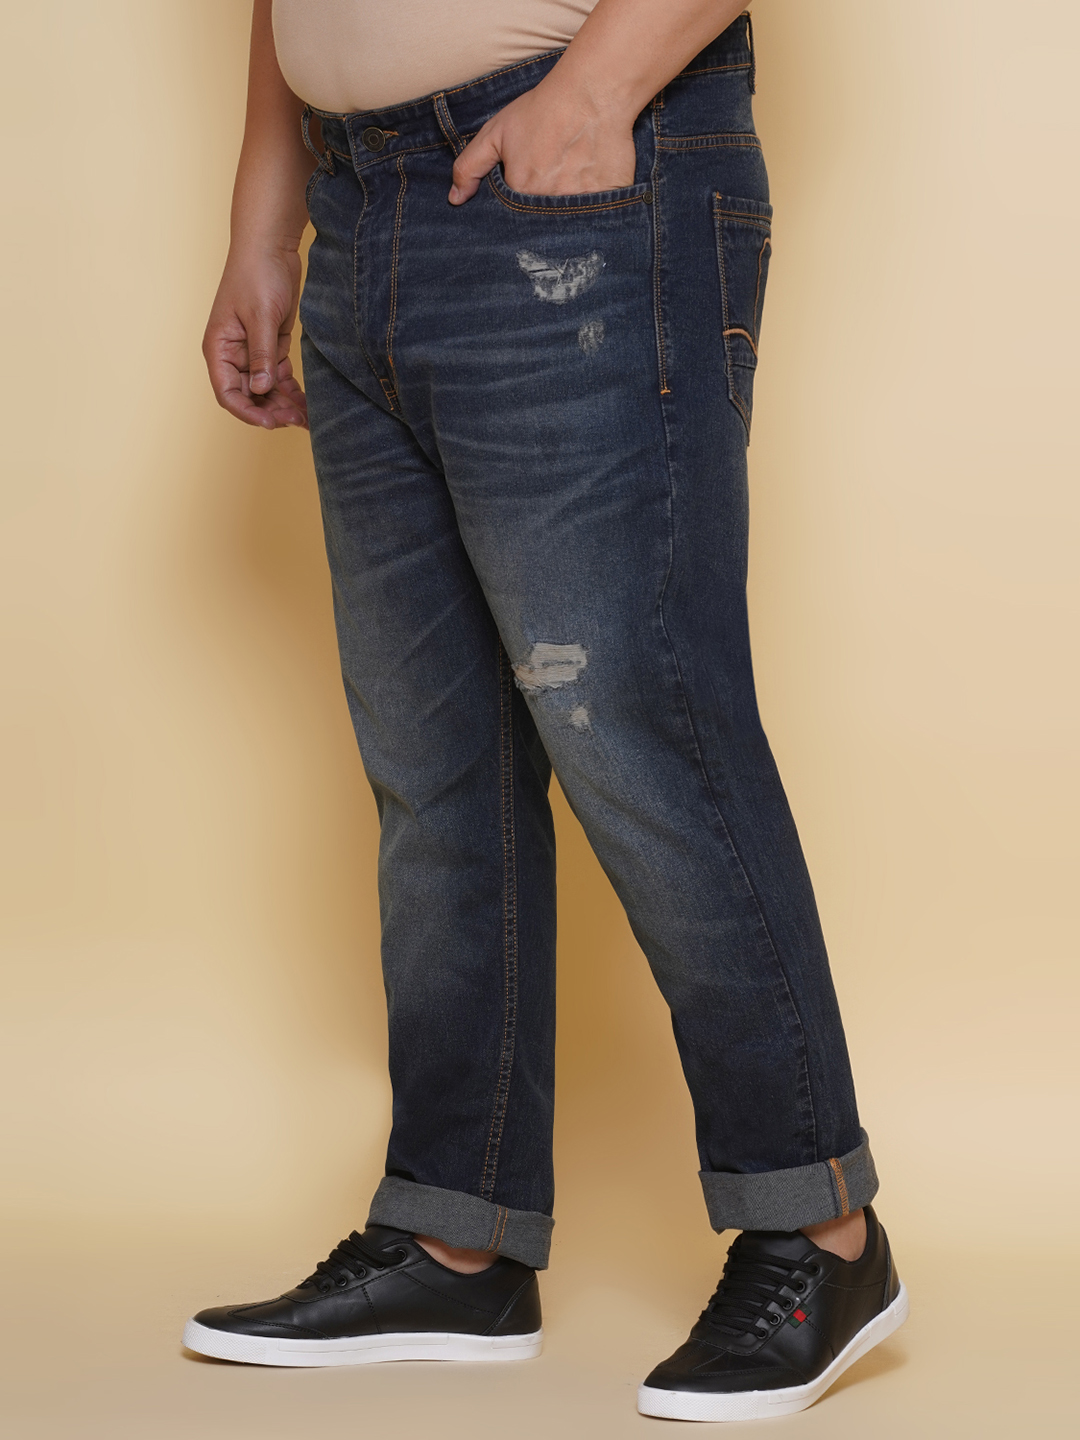 bottomwear/jeans/EJPJ25131/ejpj25131-4.jpg